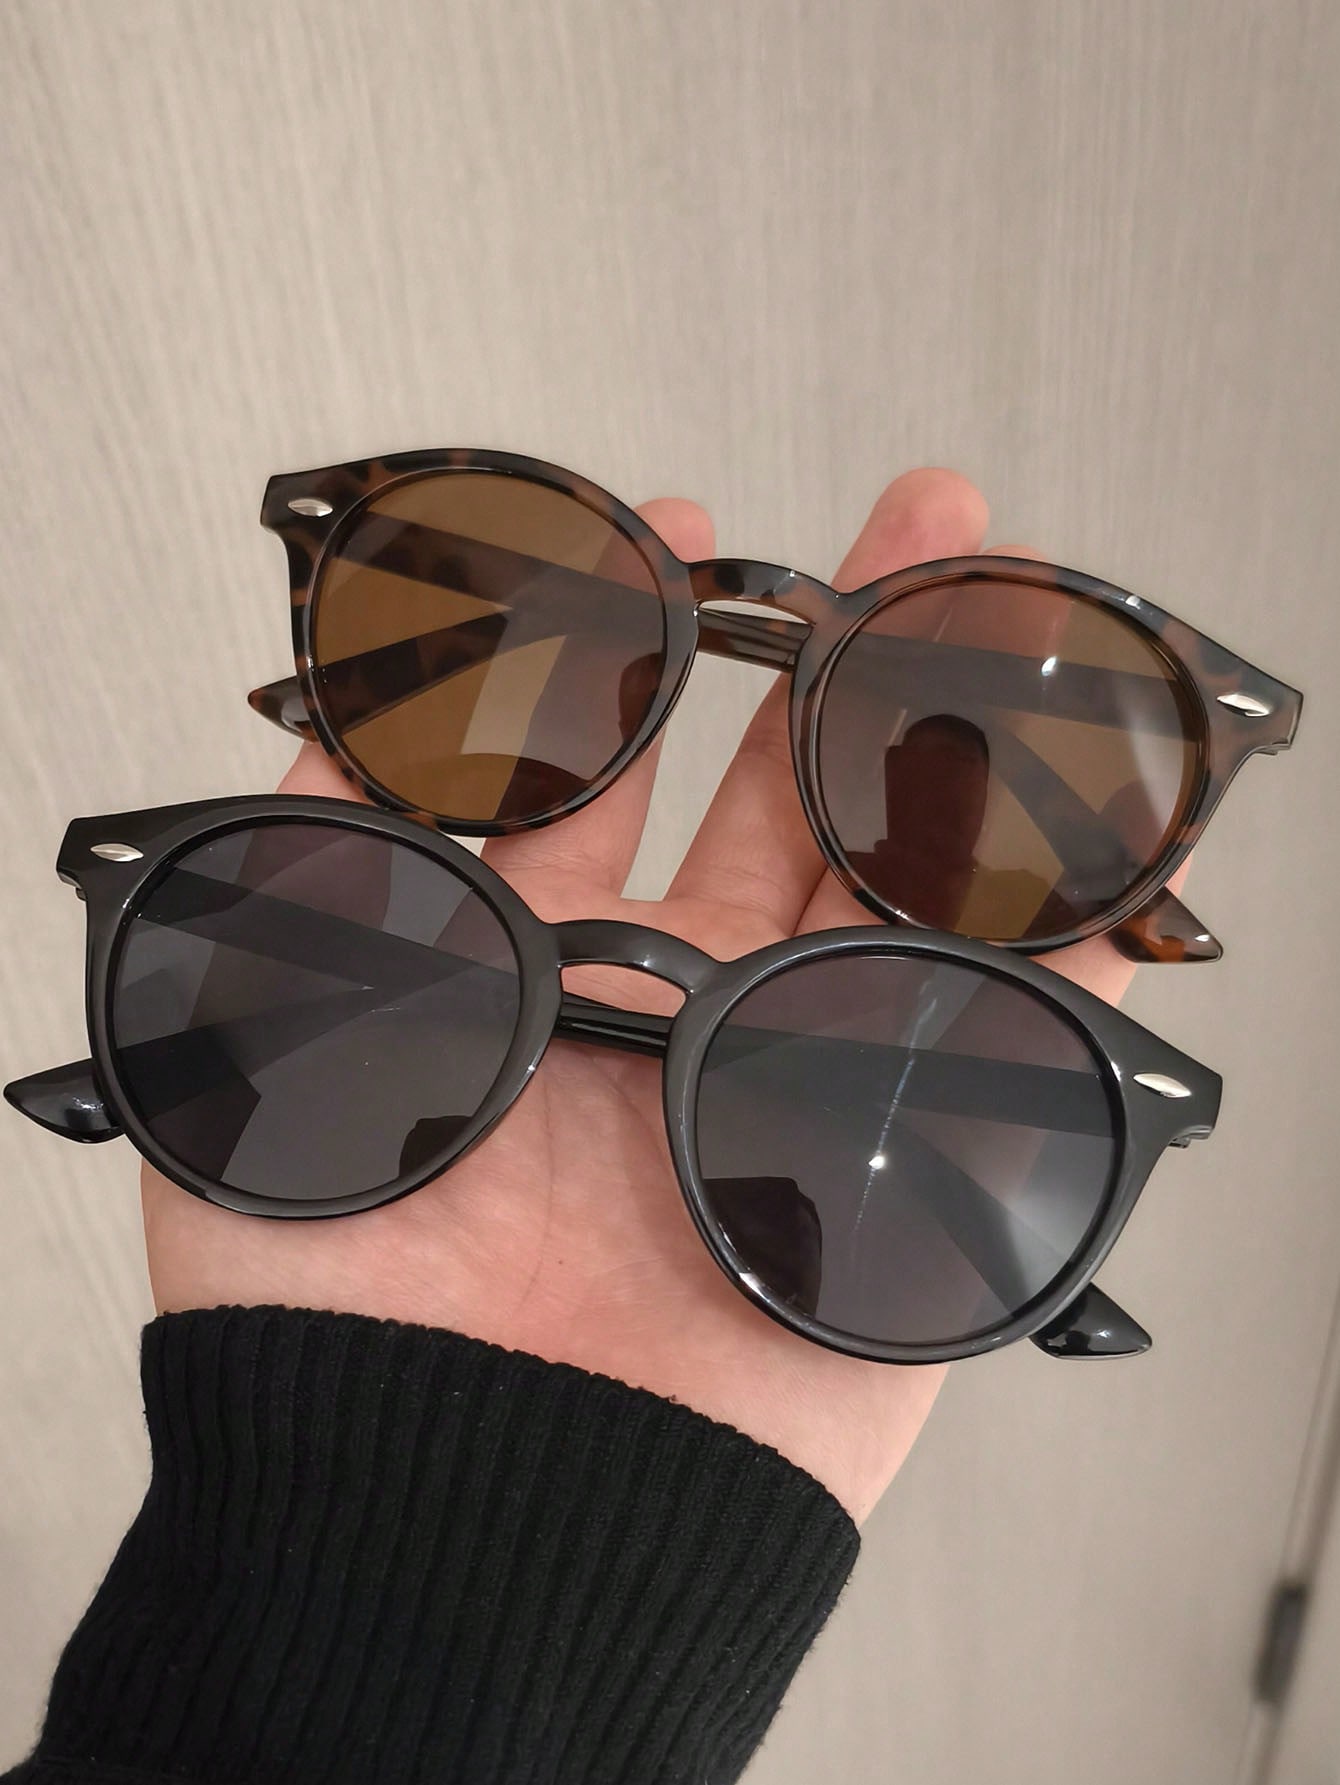 Унисекс повседневные круглые солнцезащитные очки в стиле ретро с градиентным цветом солнцезащитные очки в стиле ретро унисекс black white